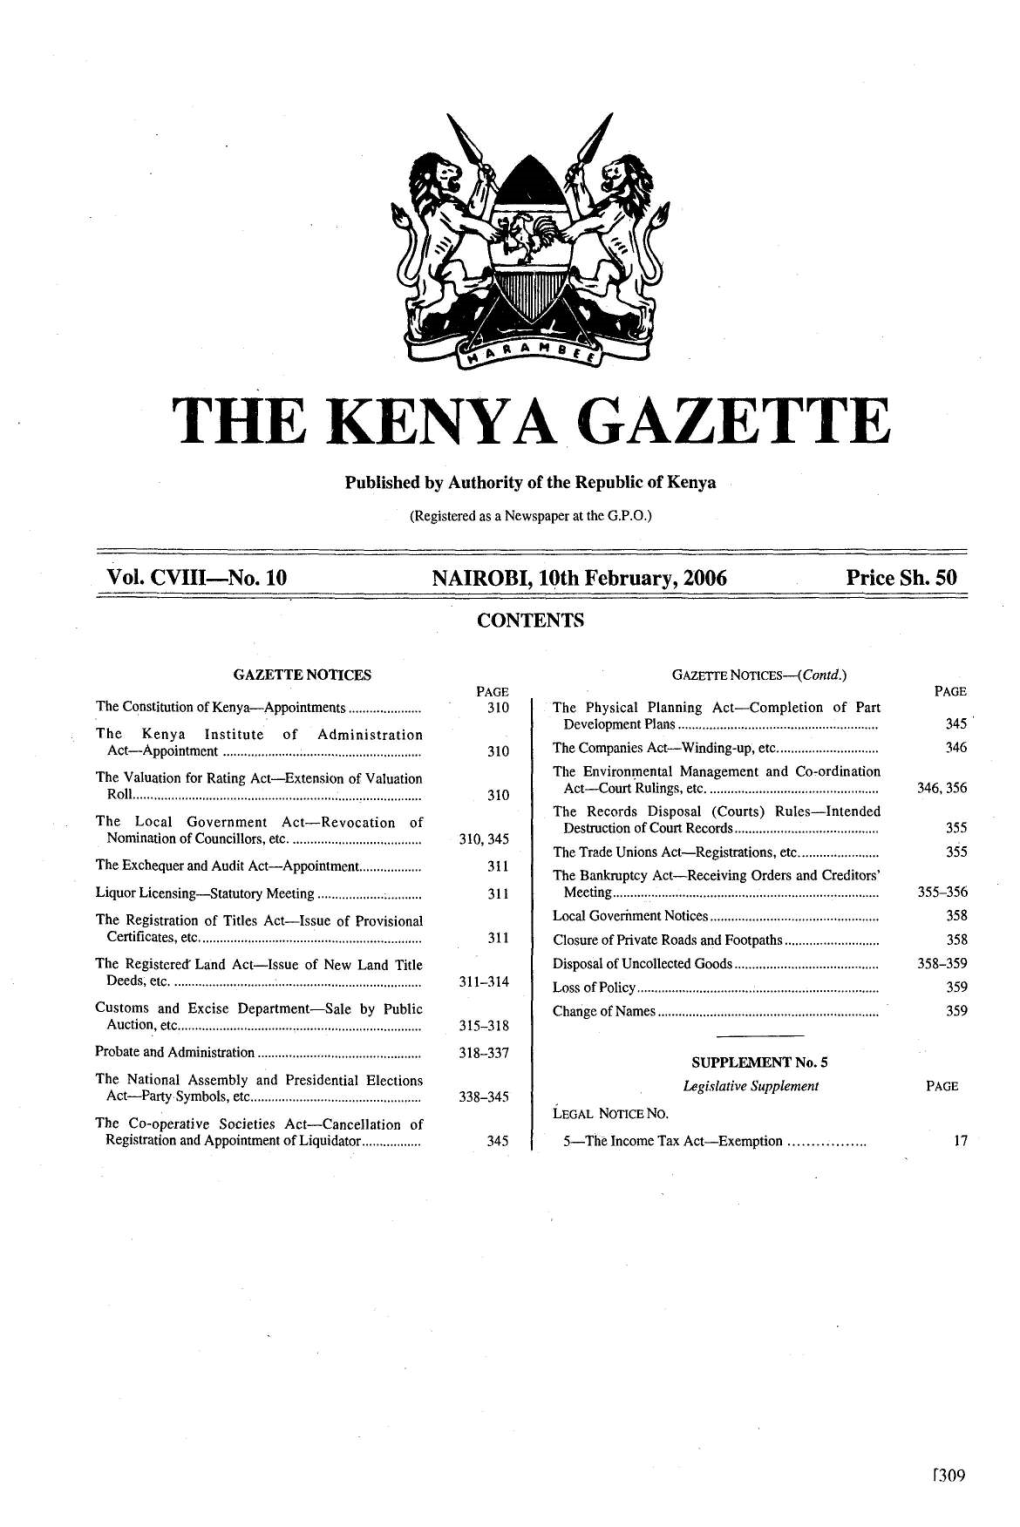 The Kenyagazette